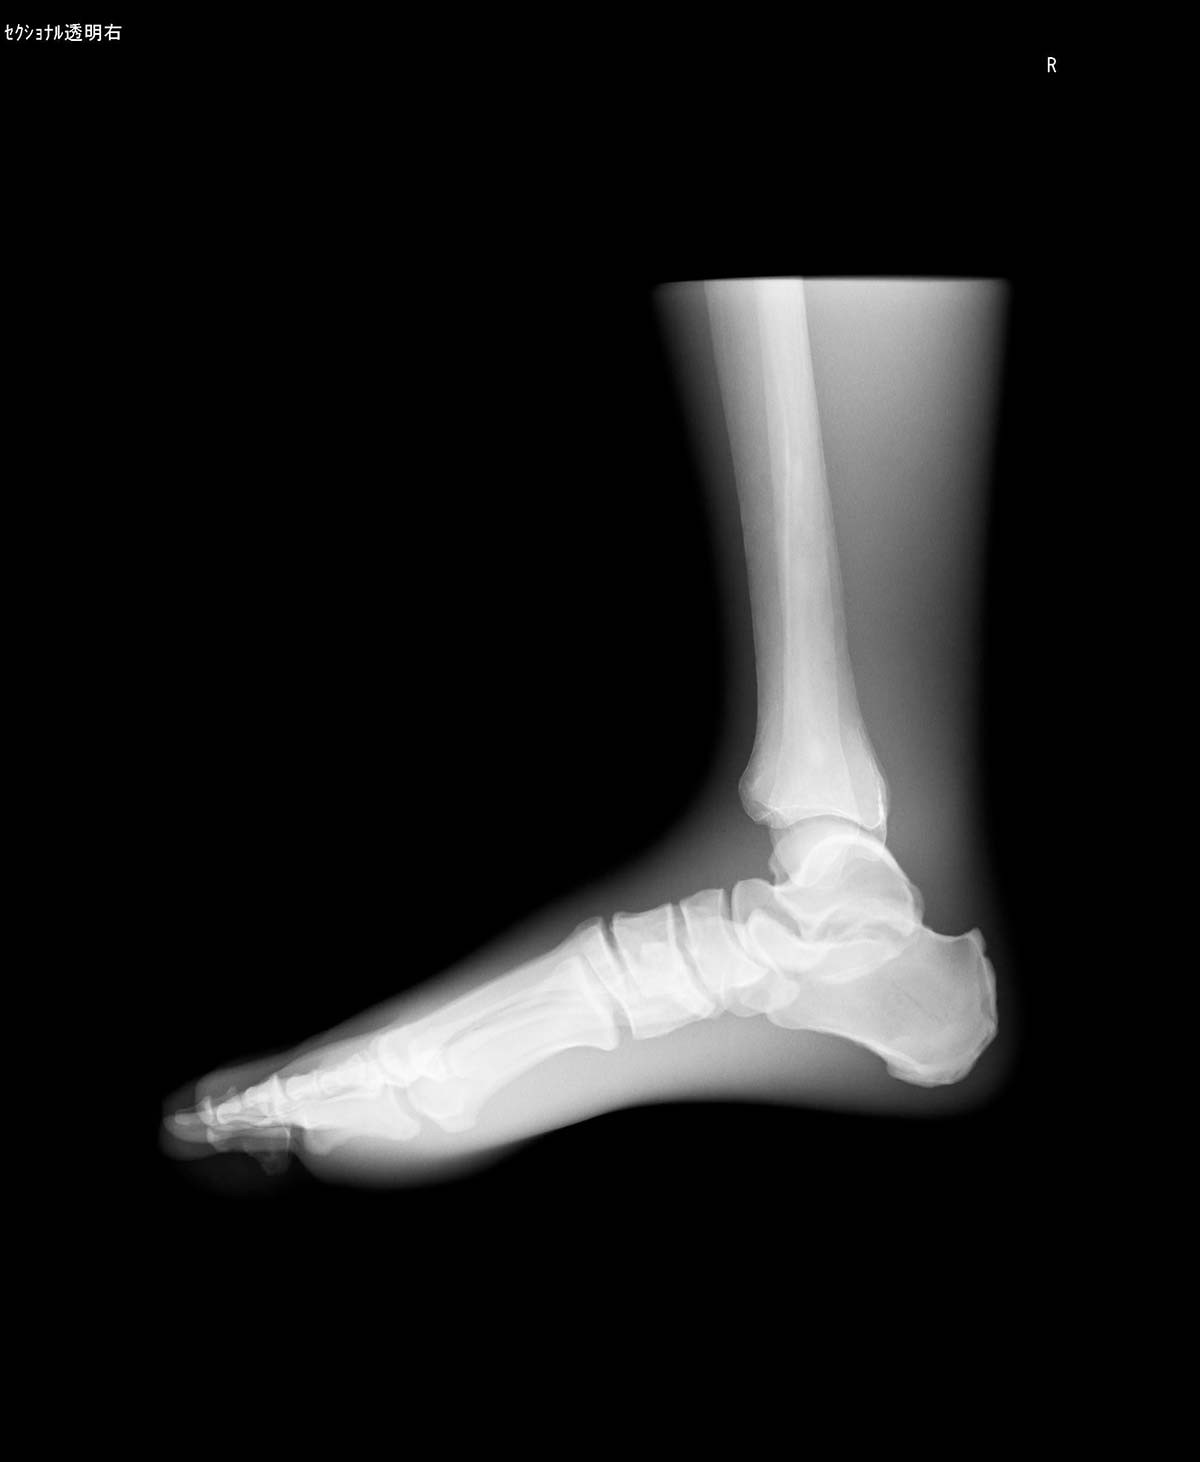 Röntgen-Teilphantom mit künstlichen Knochen - Rechter Fuß, transparent 1